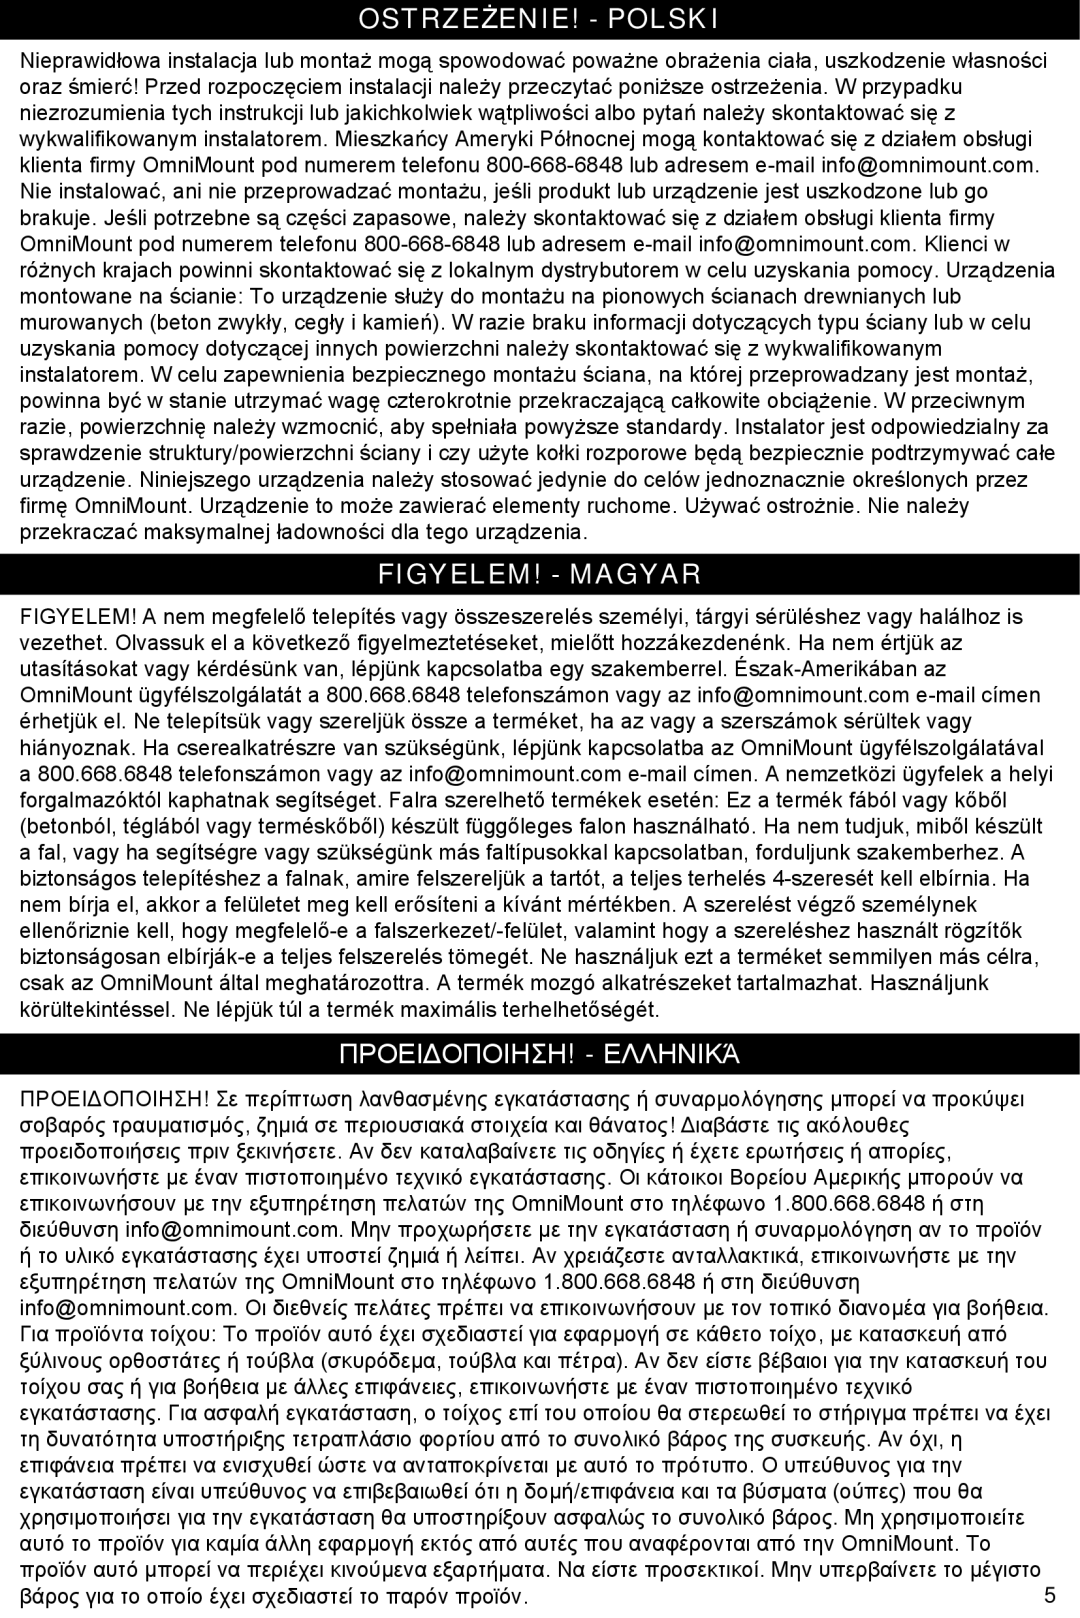 Omnimount Gemini 1 instruction manual Ostrzeżenie! - Polski, Figyelem! - Magyar, Προειδοποιηση! - Ελληνικά 